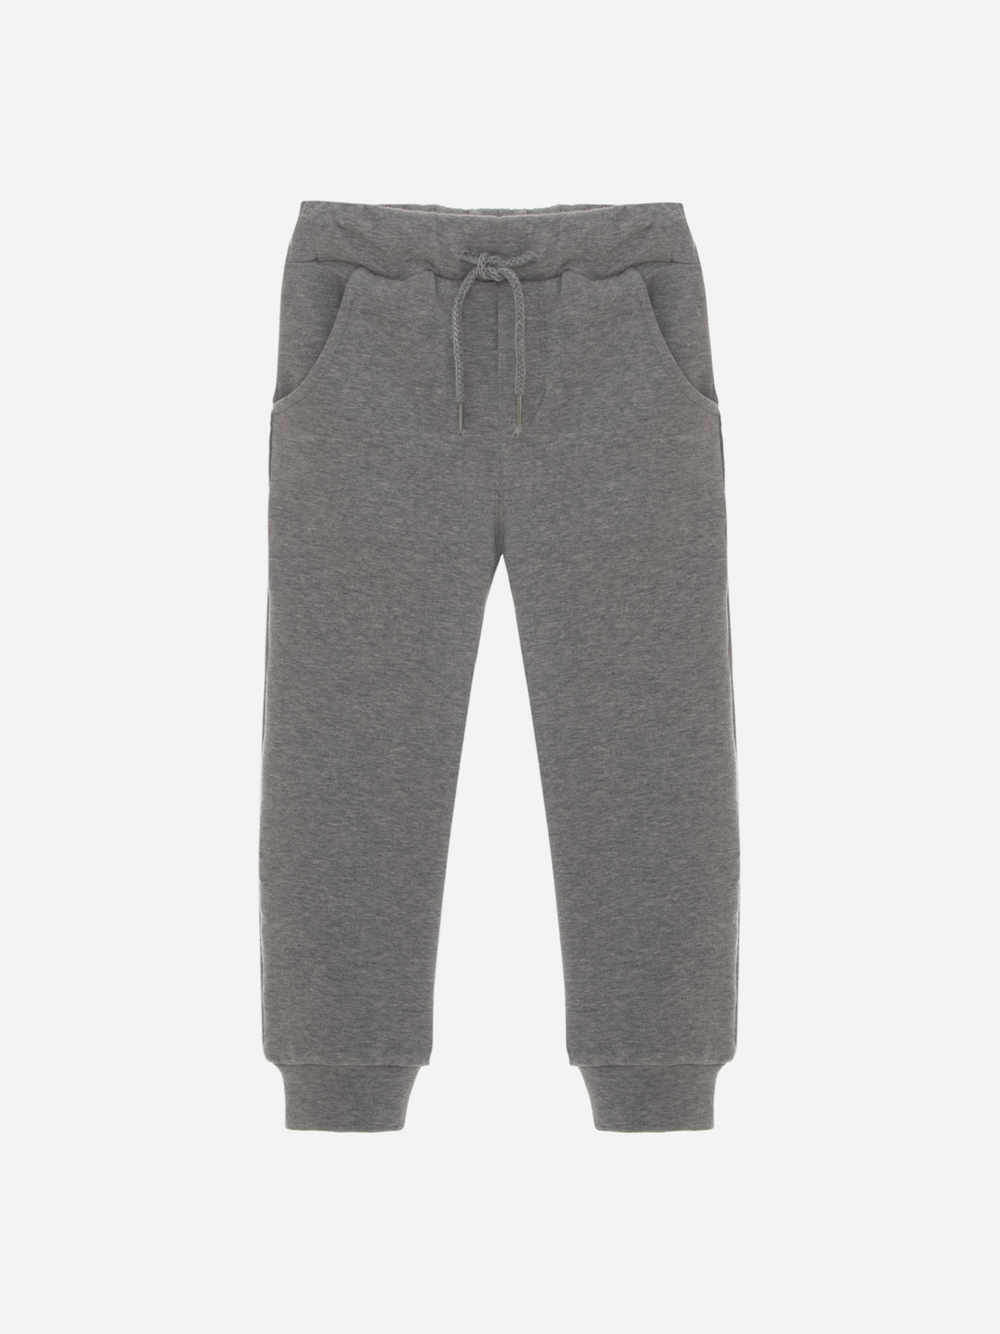 Grey Cotton Fleece Pants